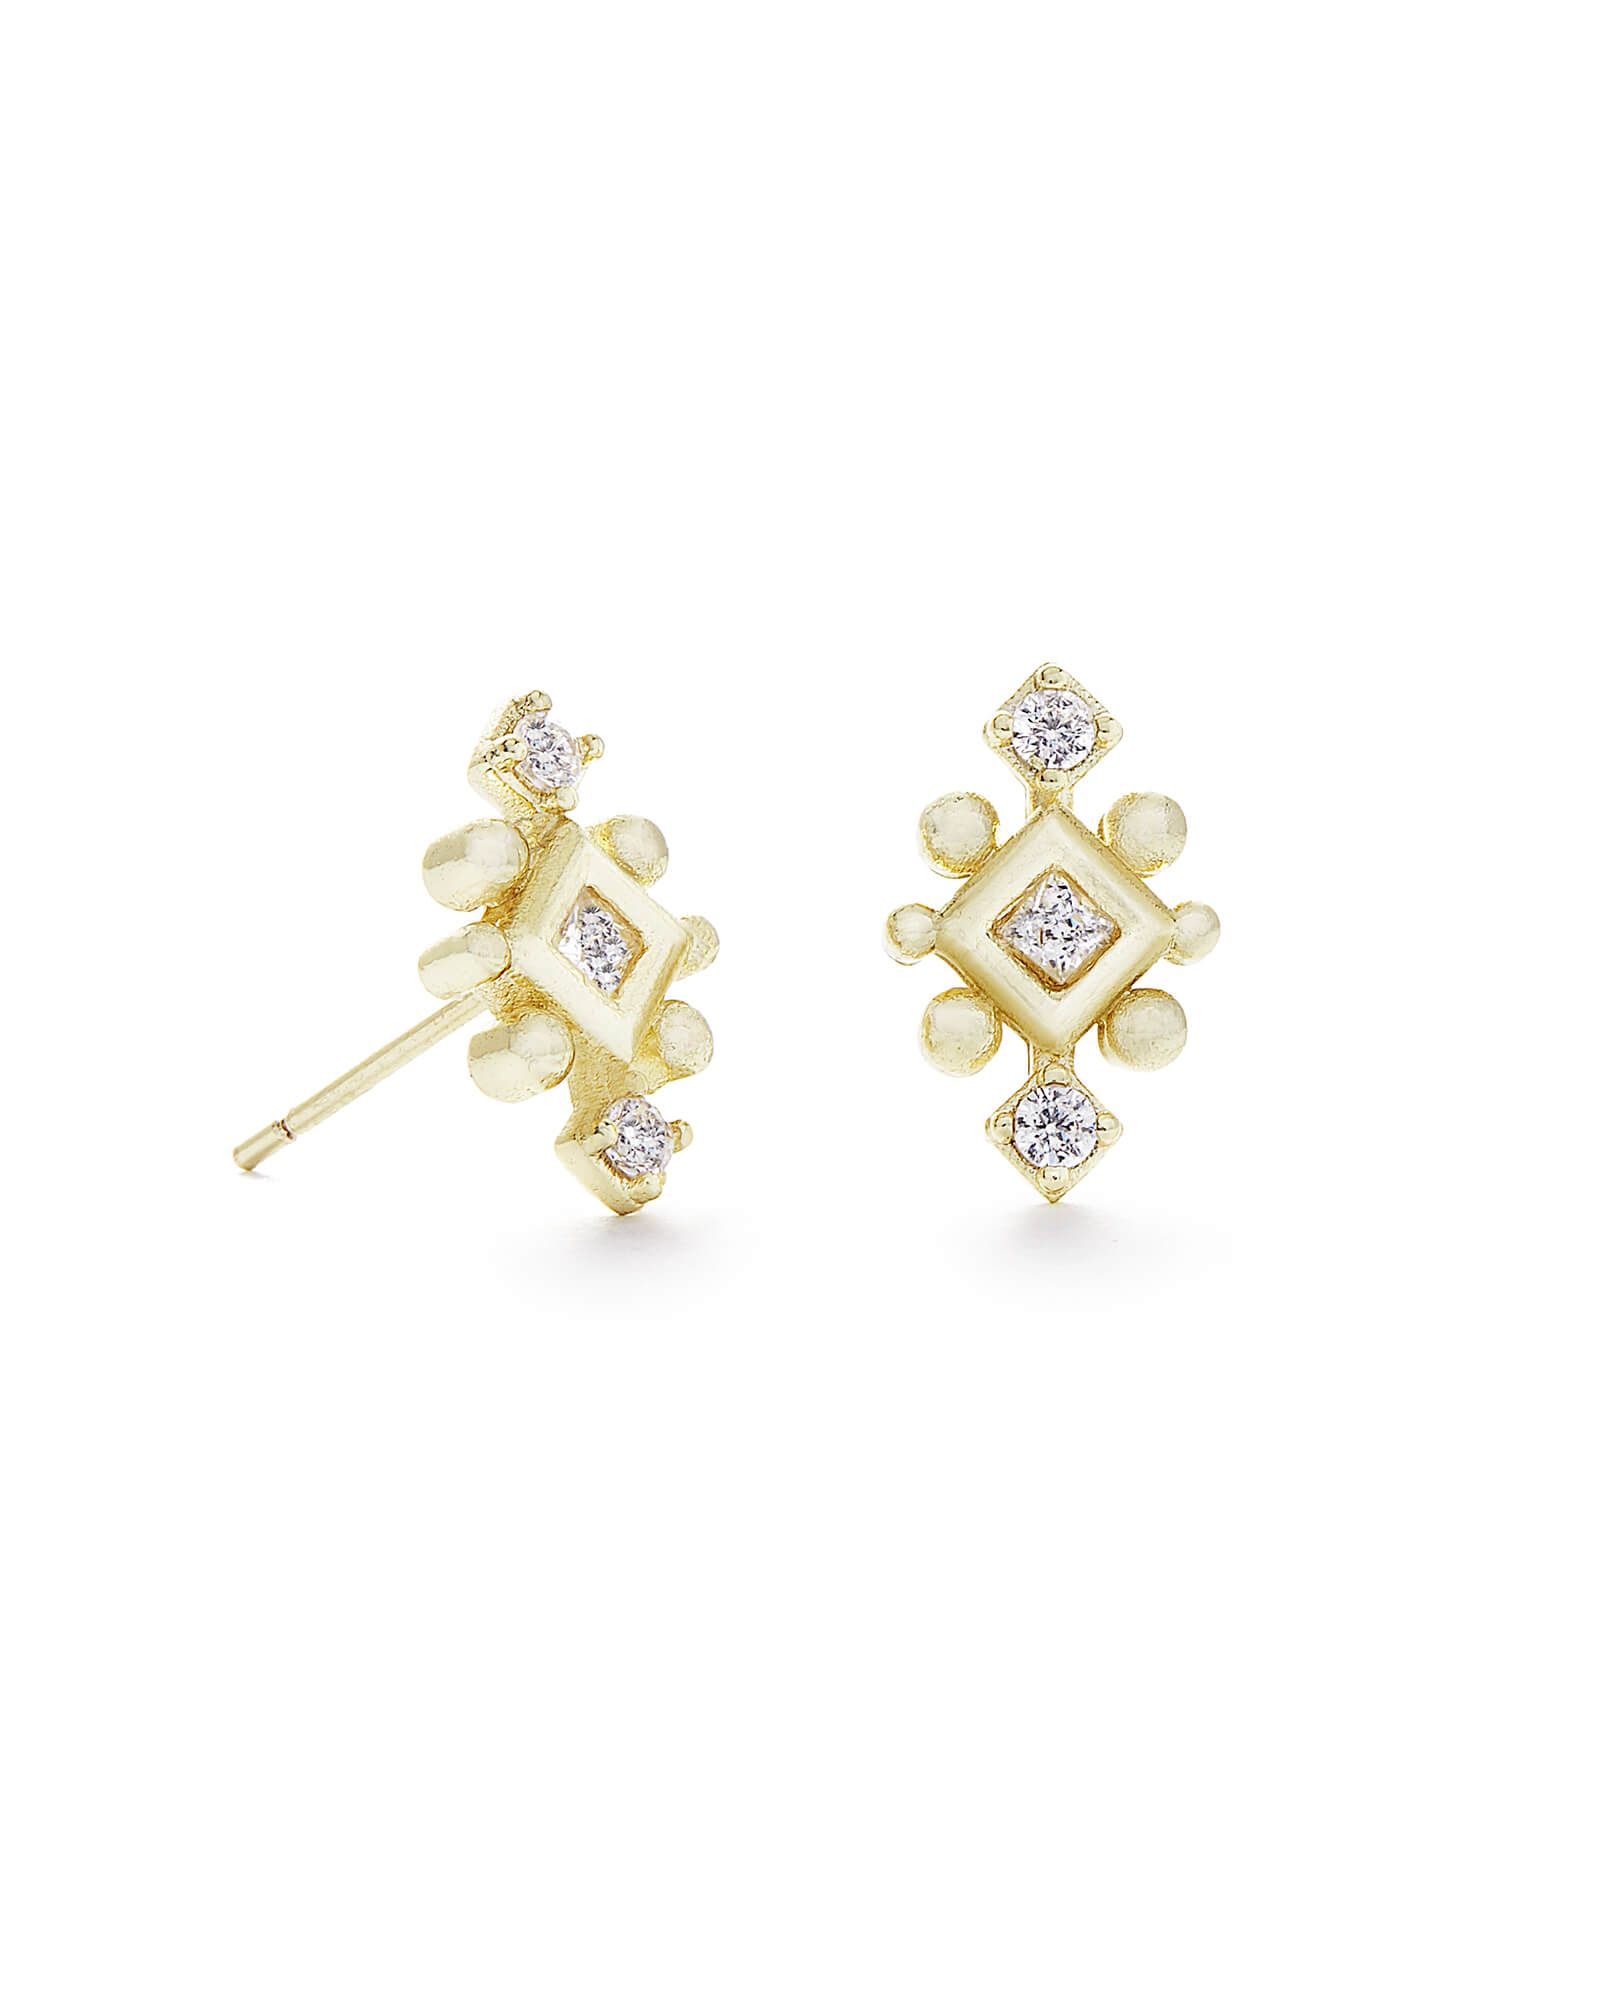 Tilda Stud Earrings in Gold | Kendra Scott